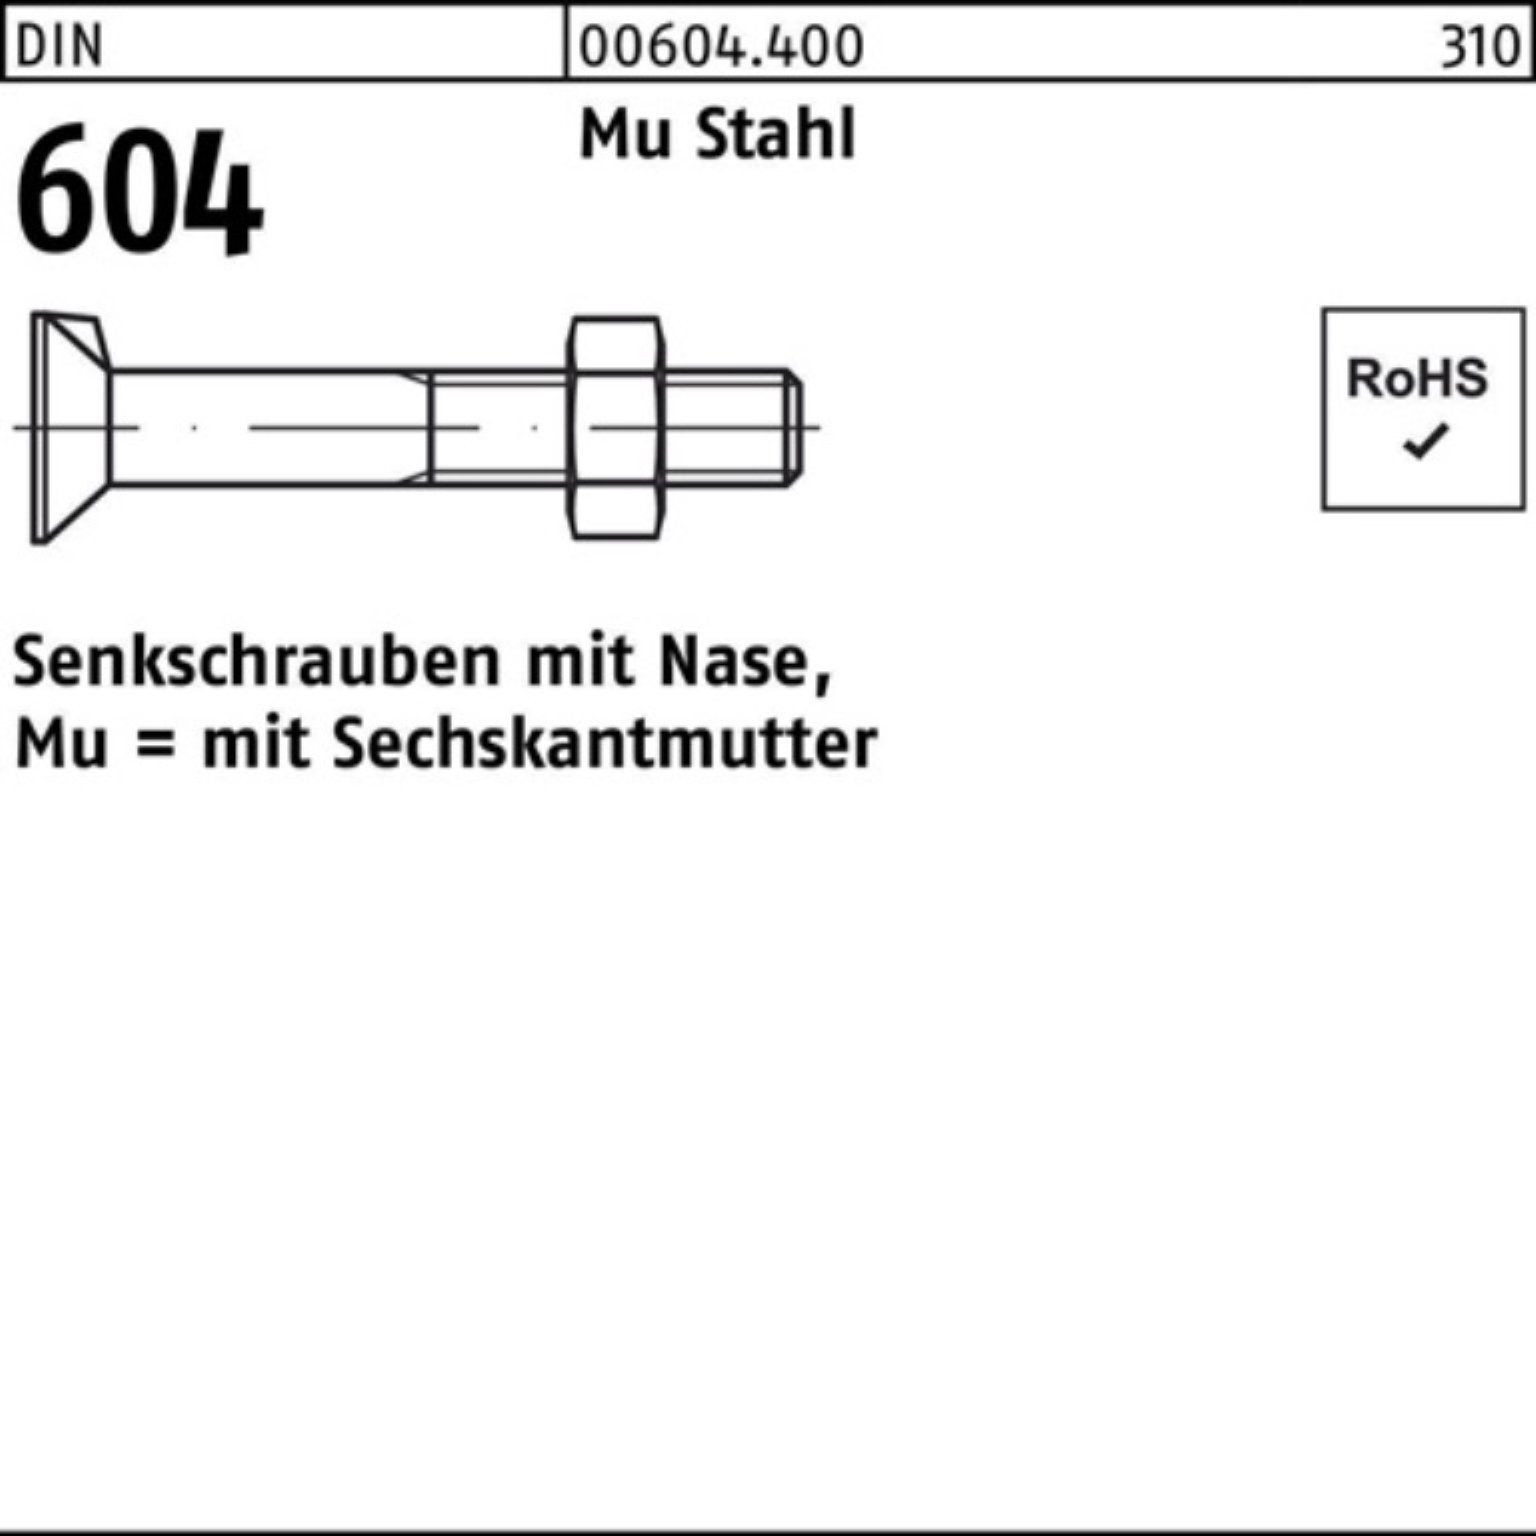 Reyher Senkschraube 100er Pack Senkschraube DIN 604 Nase/6-ktmutter M24x 90 Mu Stahl 4.6 1